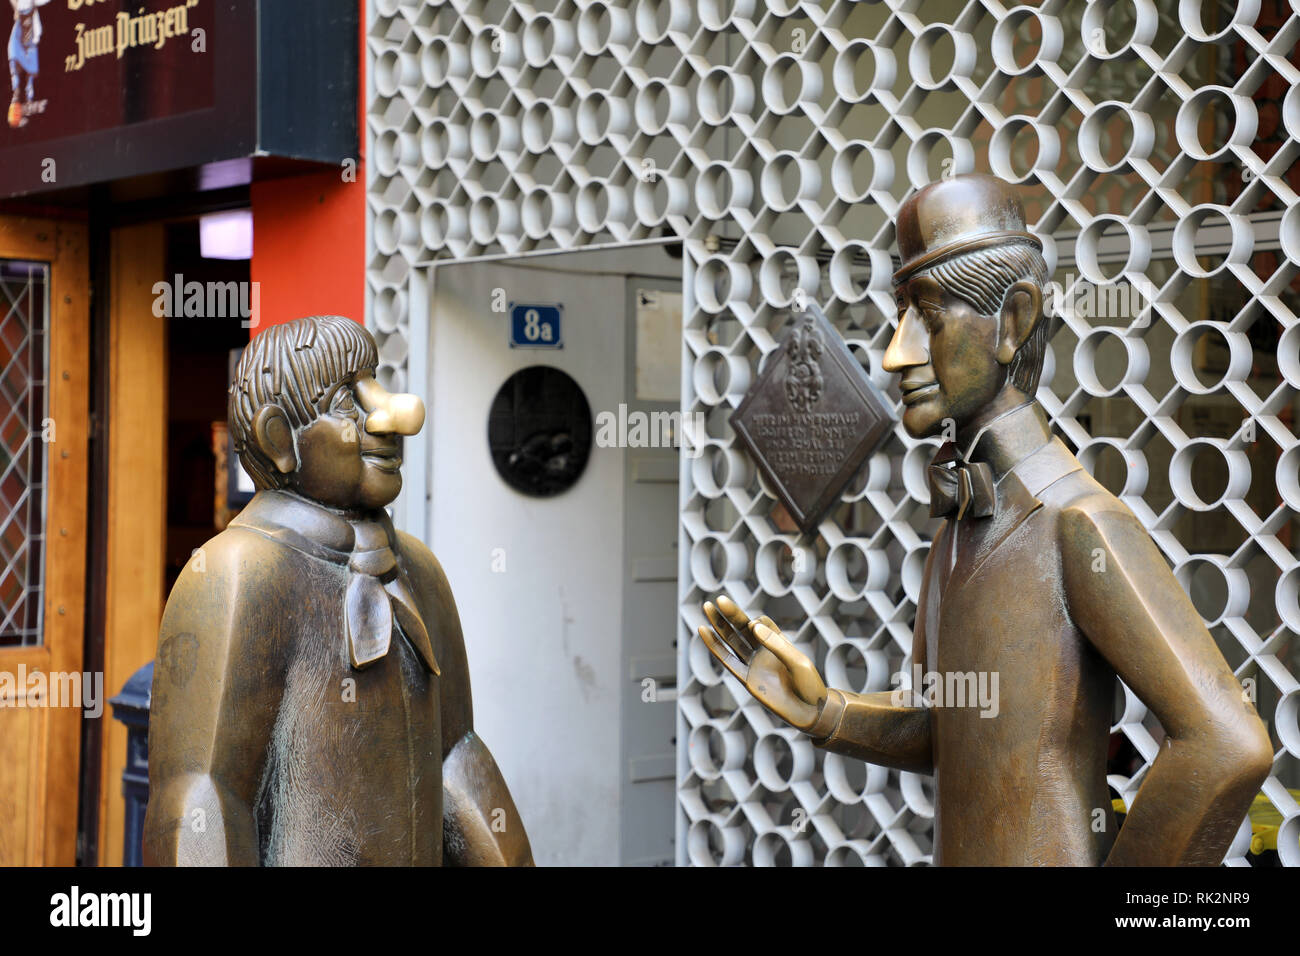 Colonia, Germania - 31 Maggio 2018: Statua di Tunnes und Schal chi sono due leggendarie figure dal Hänneschen Puppet Theatre di Colonia, Germania Foto Stock